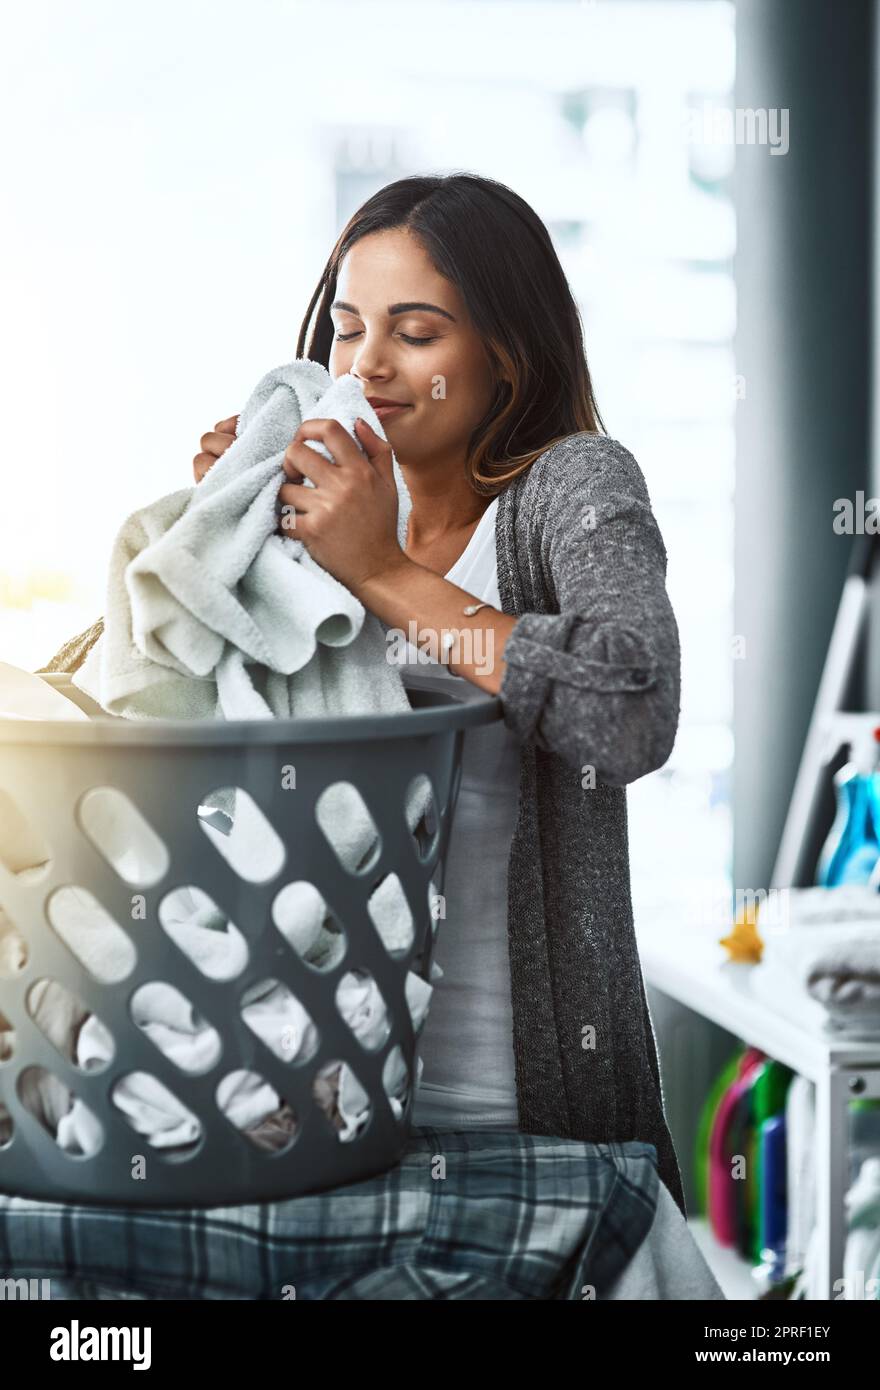 L'odeur rafraîchissante du linge propre. Une jeune femme attrayante faisant sa lessive à la maison. Banque D'Images